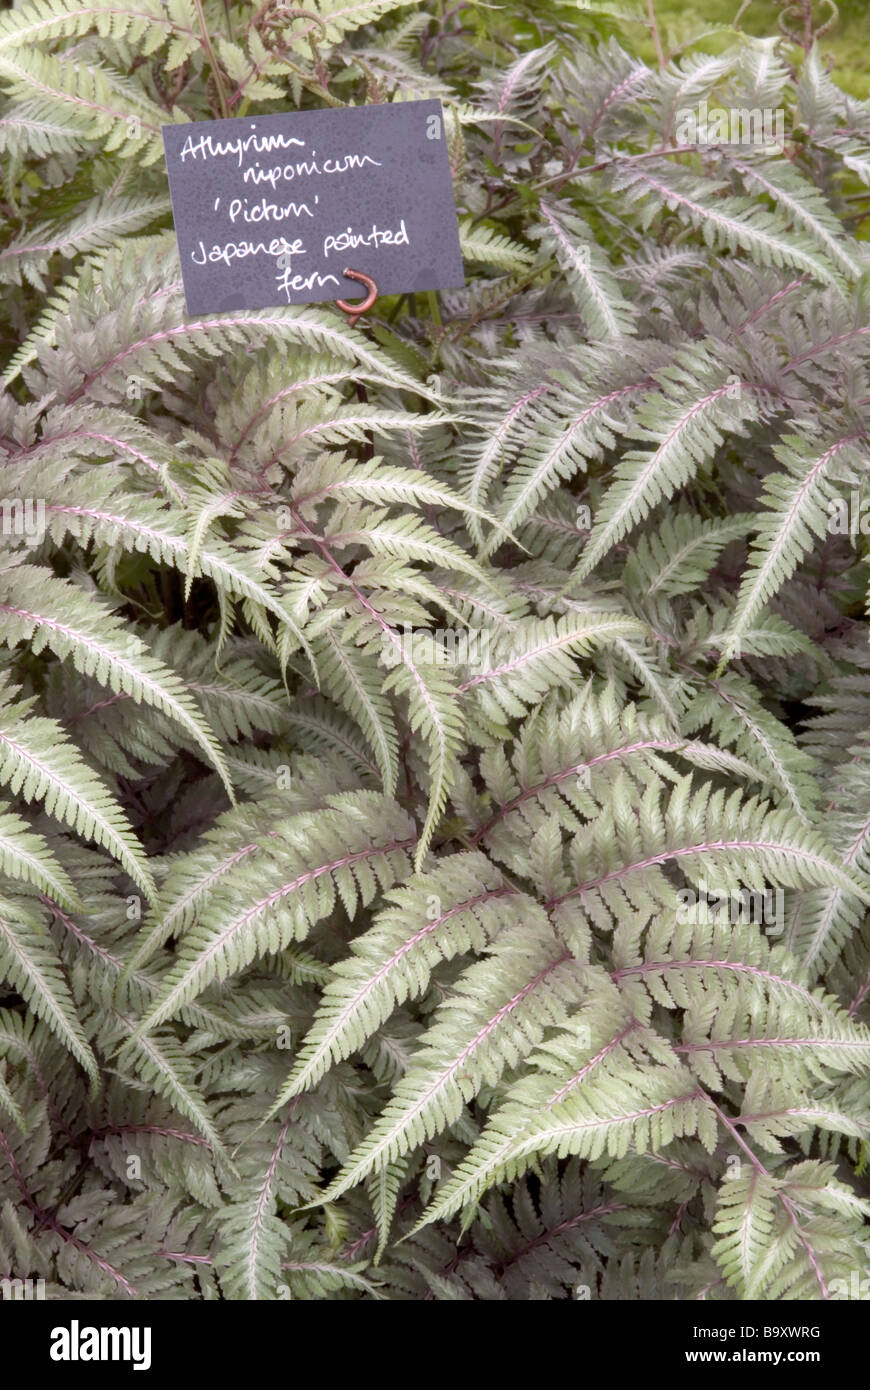 Athyrium nipponicum 'Pictum'; Japanese painted fern. Stock Photo